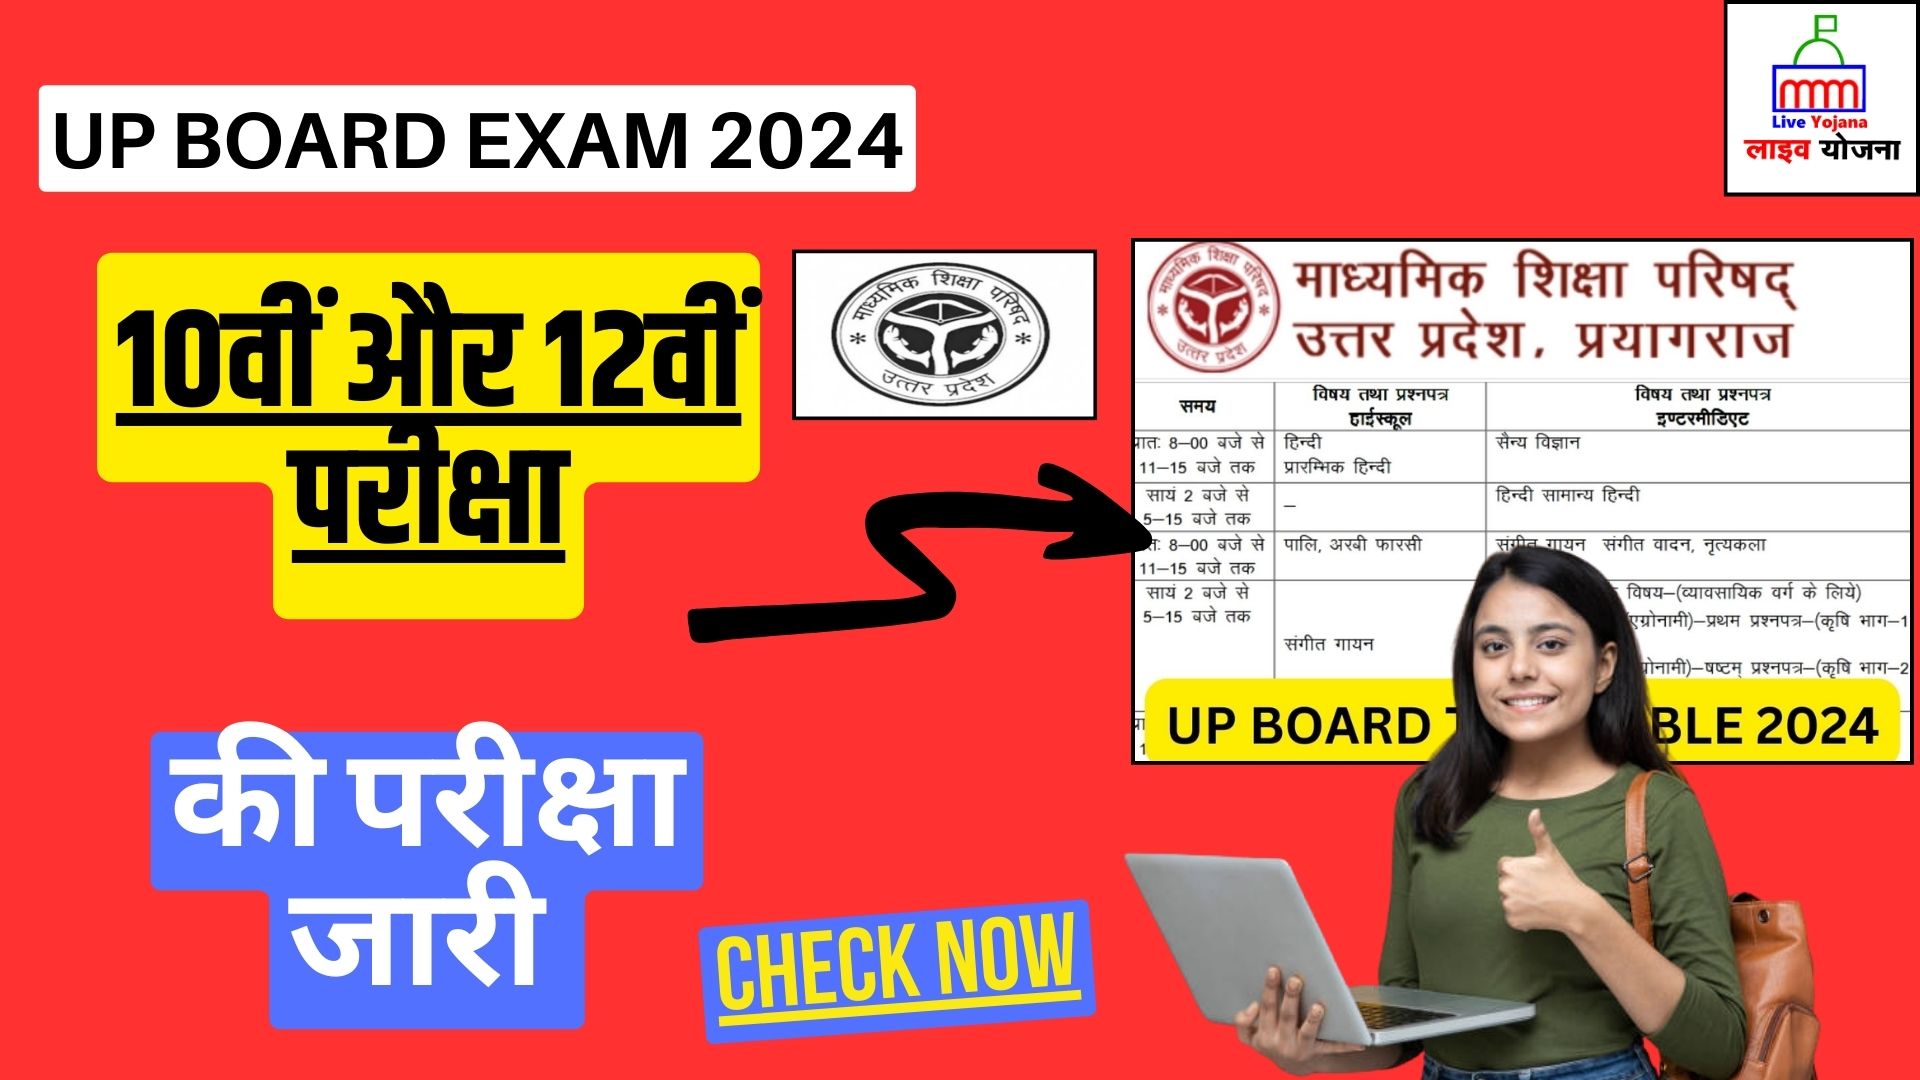 UP Board Exam 2024 UP Board Exam 2023 UPMSP UP Board Exam Uttar Pradesh Board Exam Uttar Pradesh Board Exam 2024